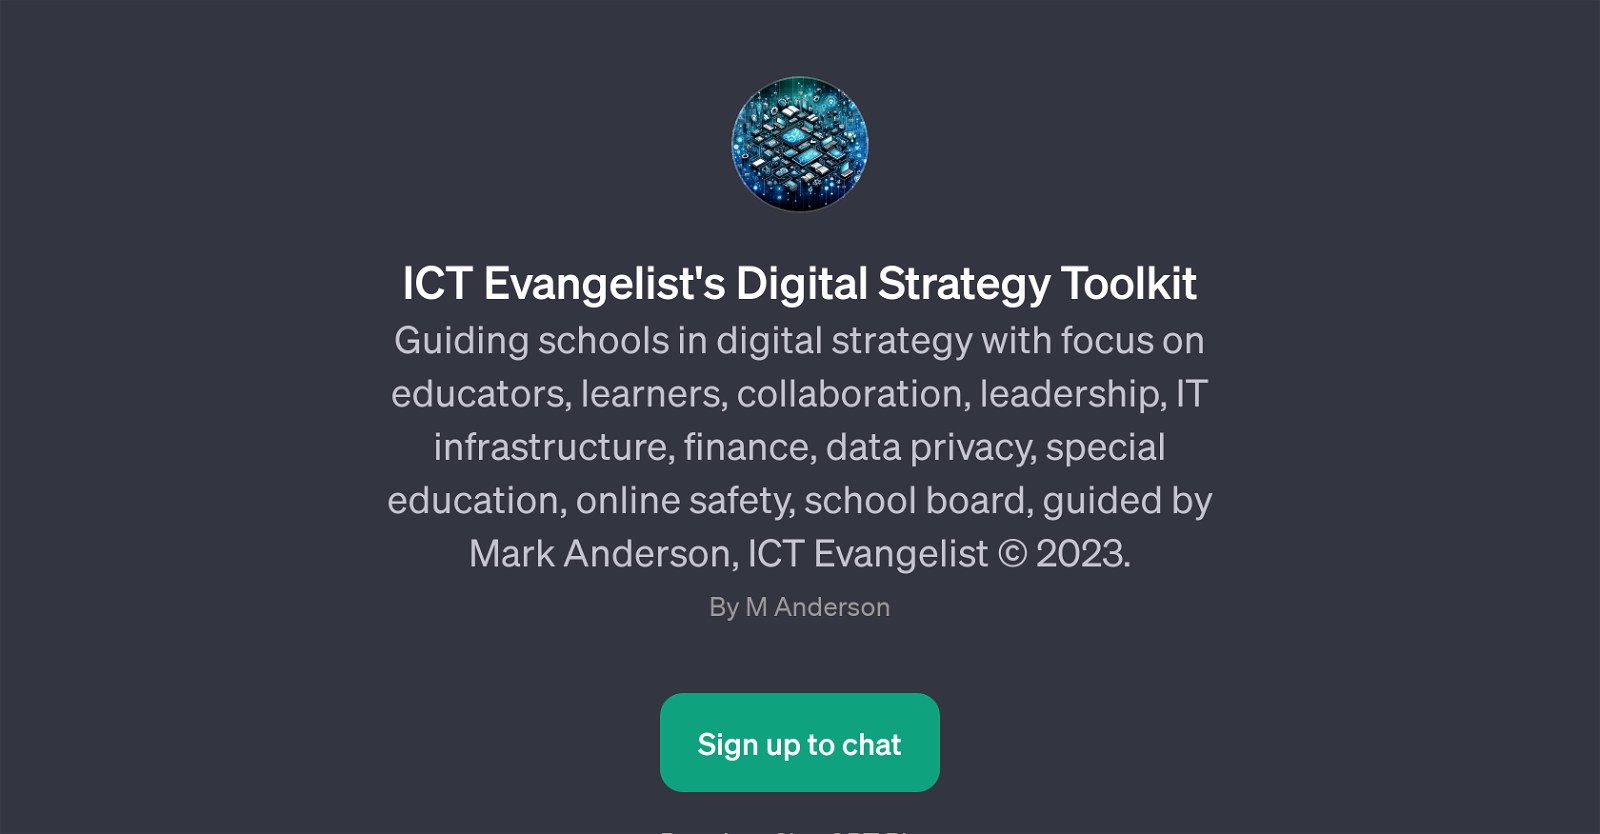 ICT Evangelist's Digital Strategy Toolkit website